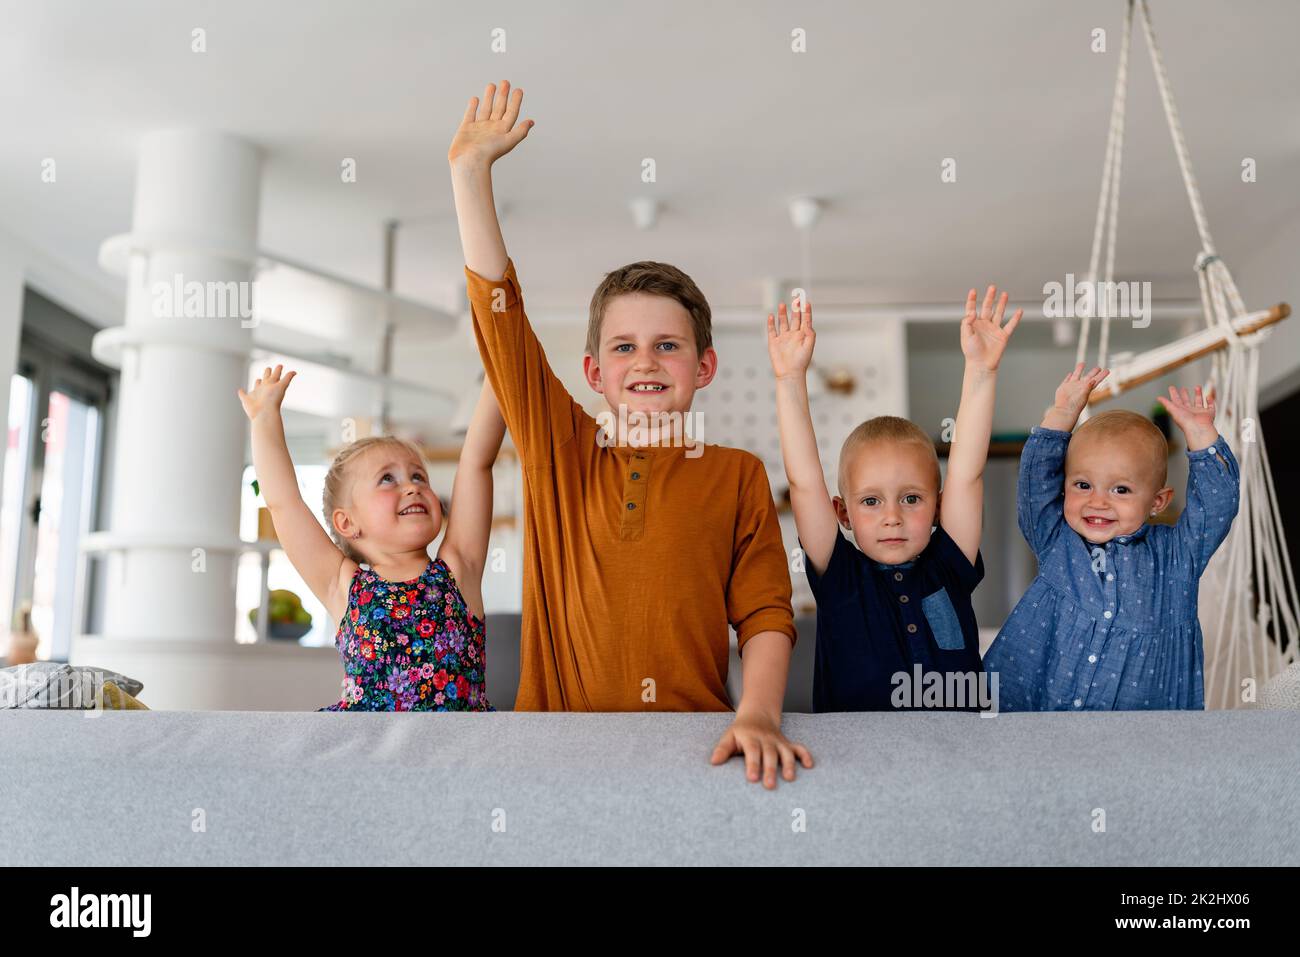 Gruppo di bambini che si divertono e sorridono insieme in interni. Foto Stock